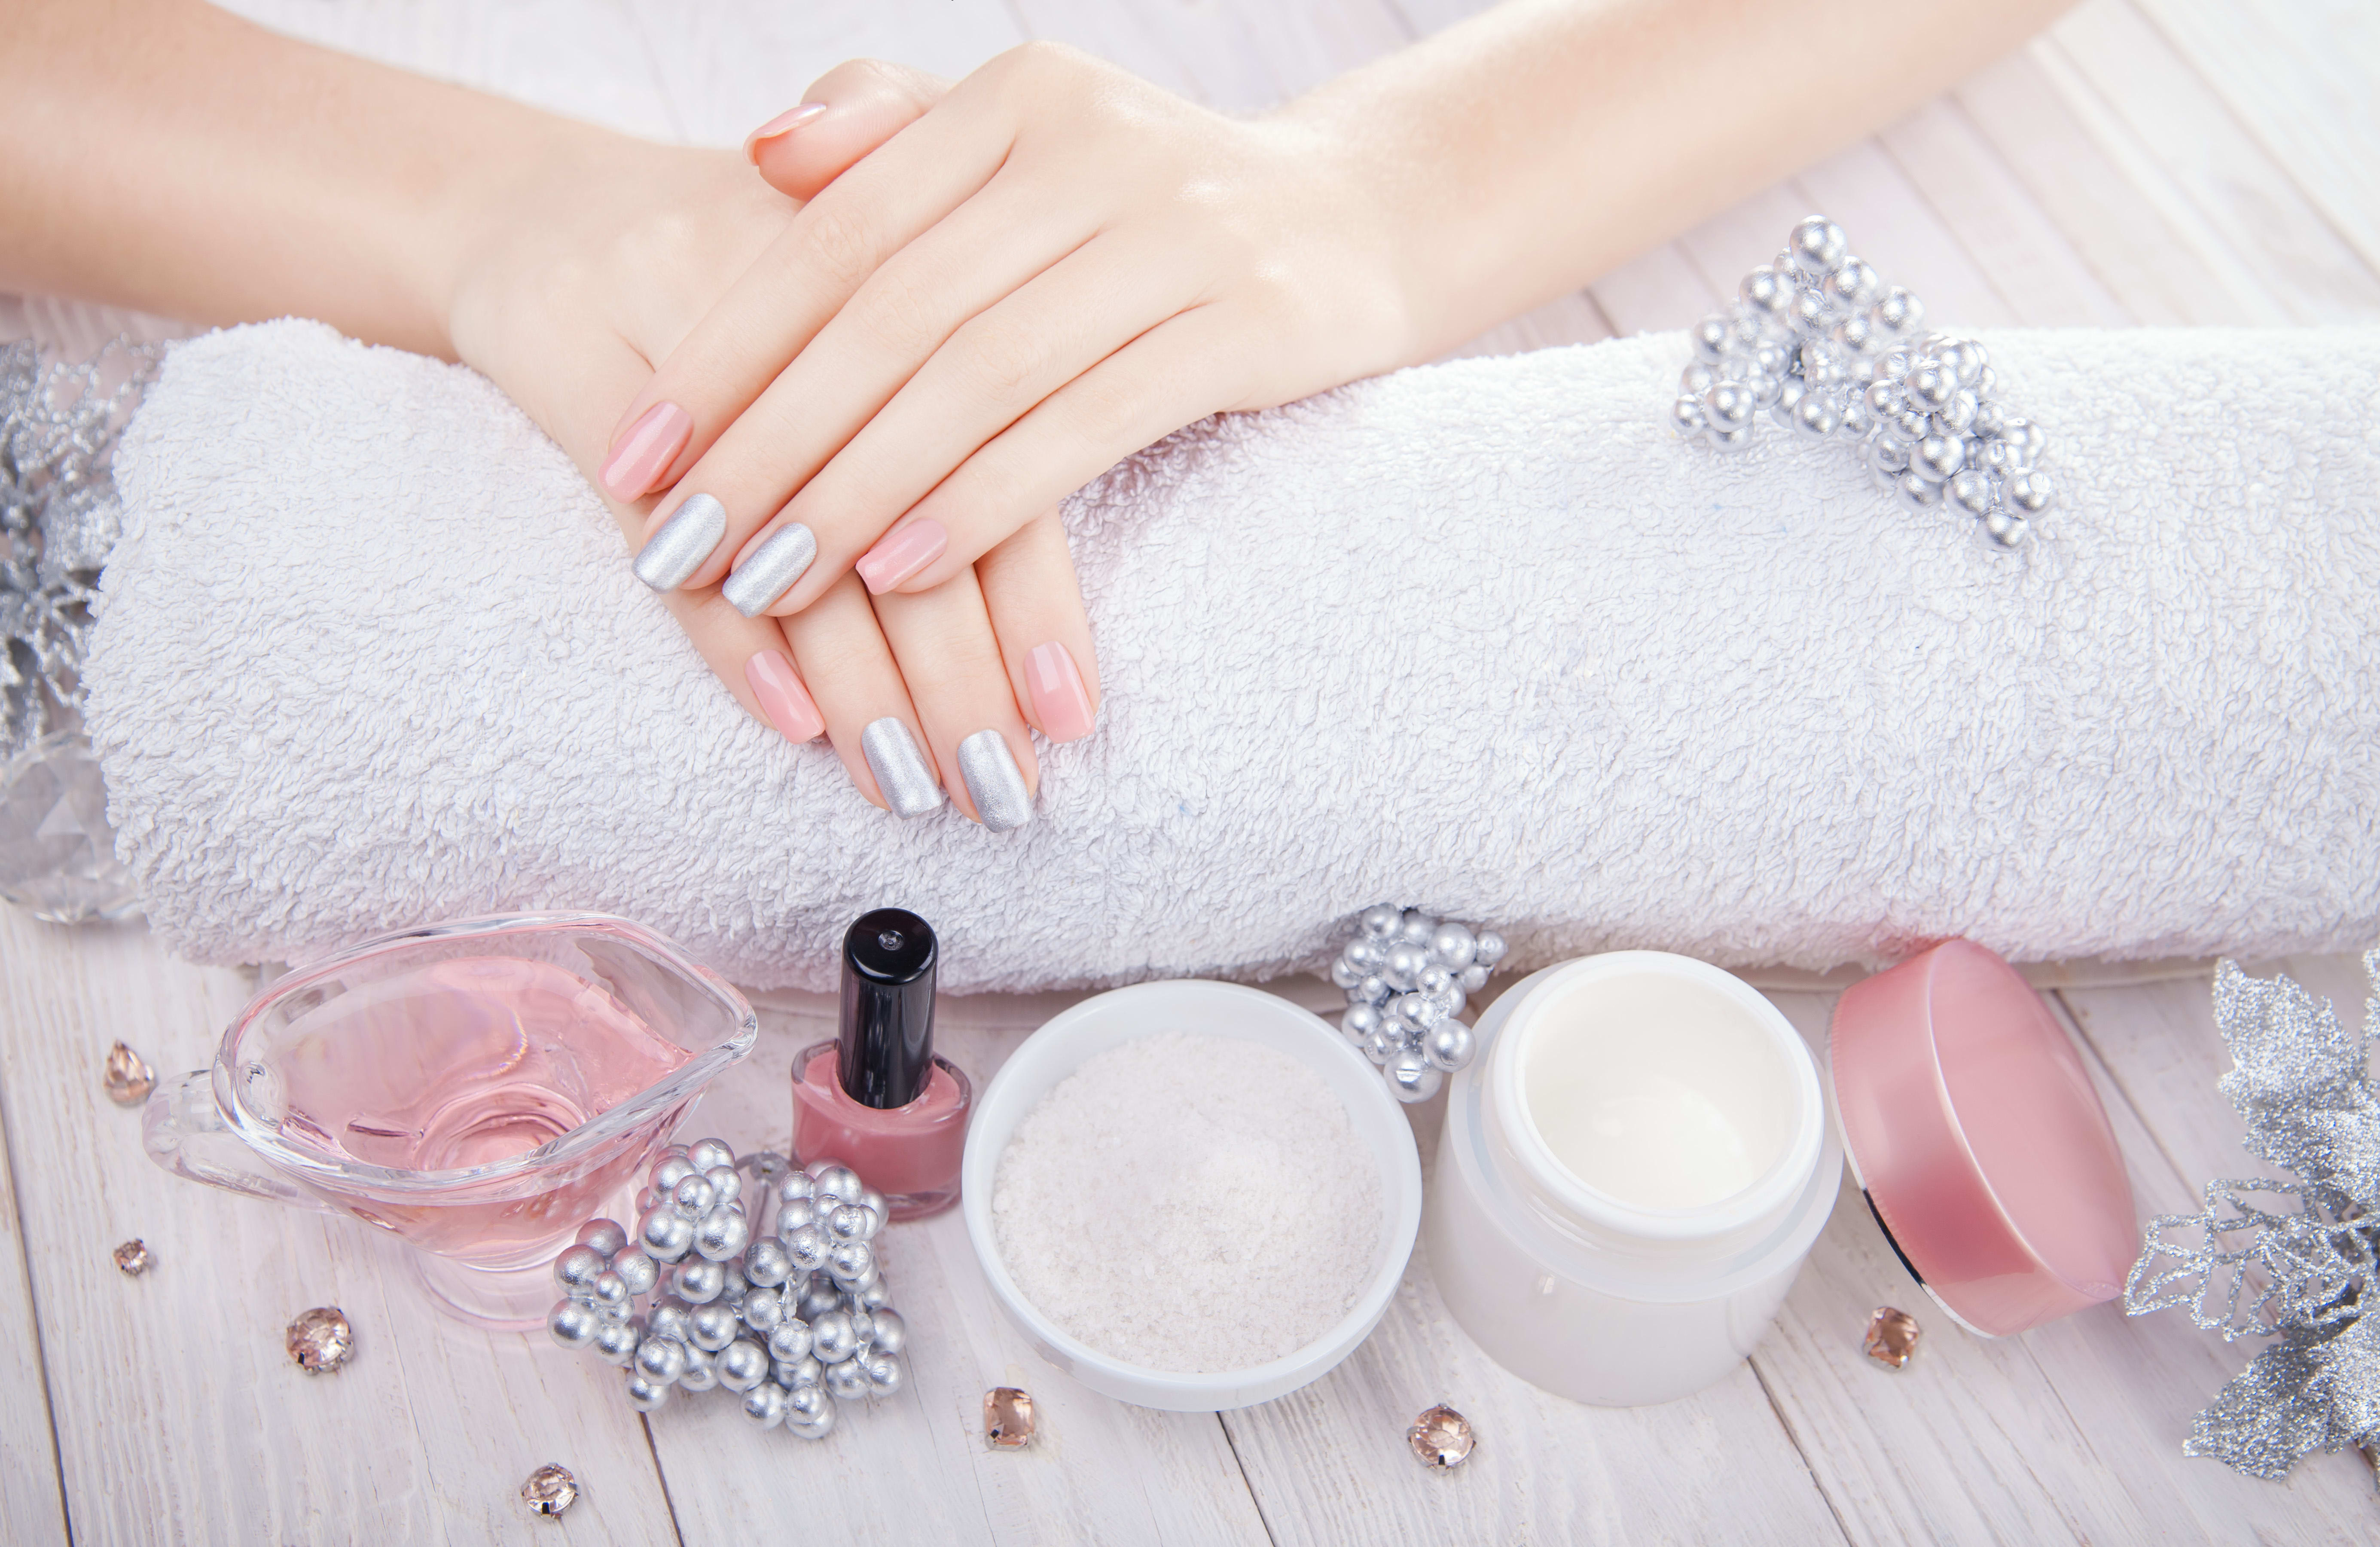 Nail Care For Long-Lasting Polish | Bride nails, Nails, Dipped nails